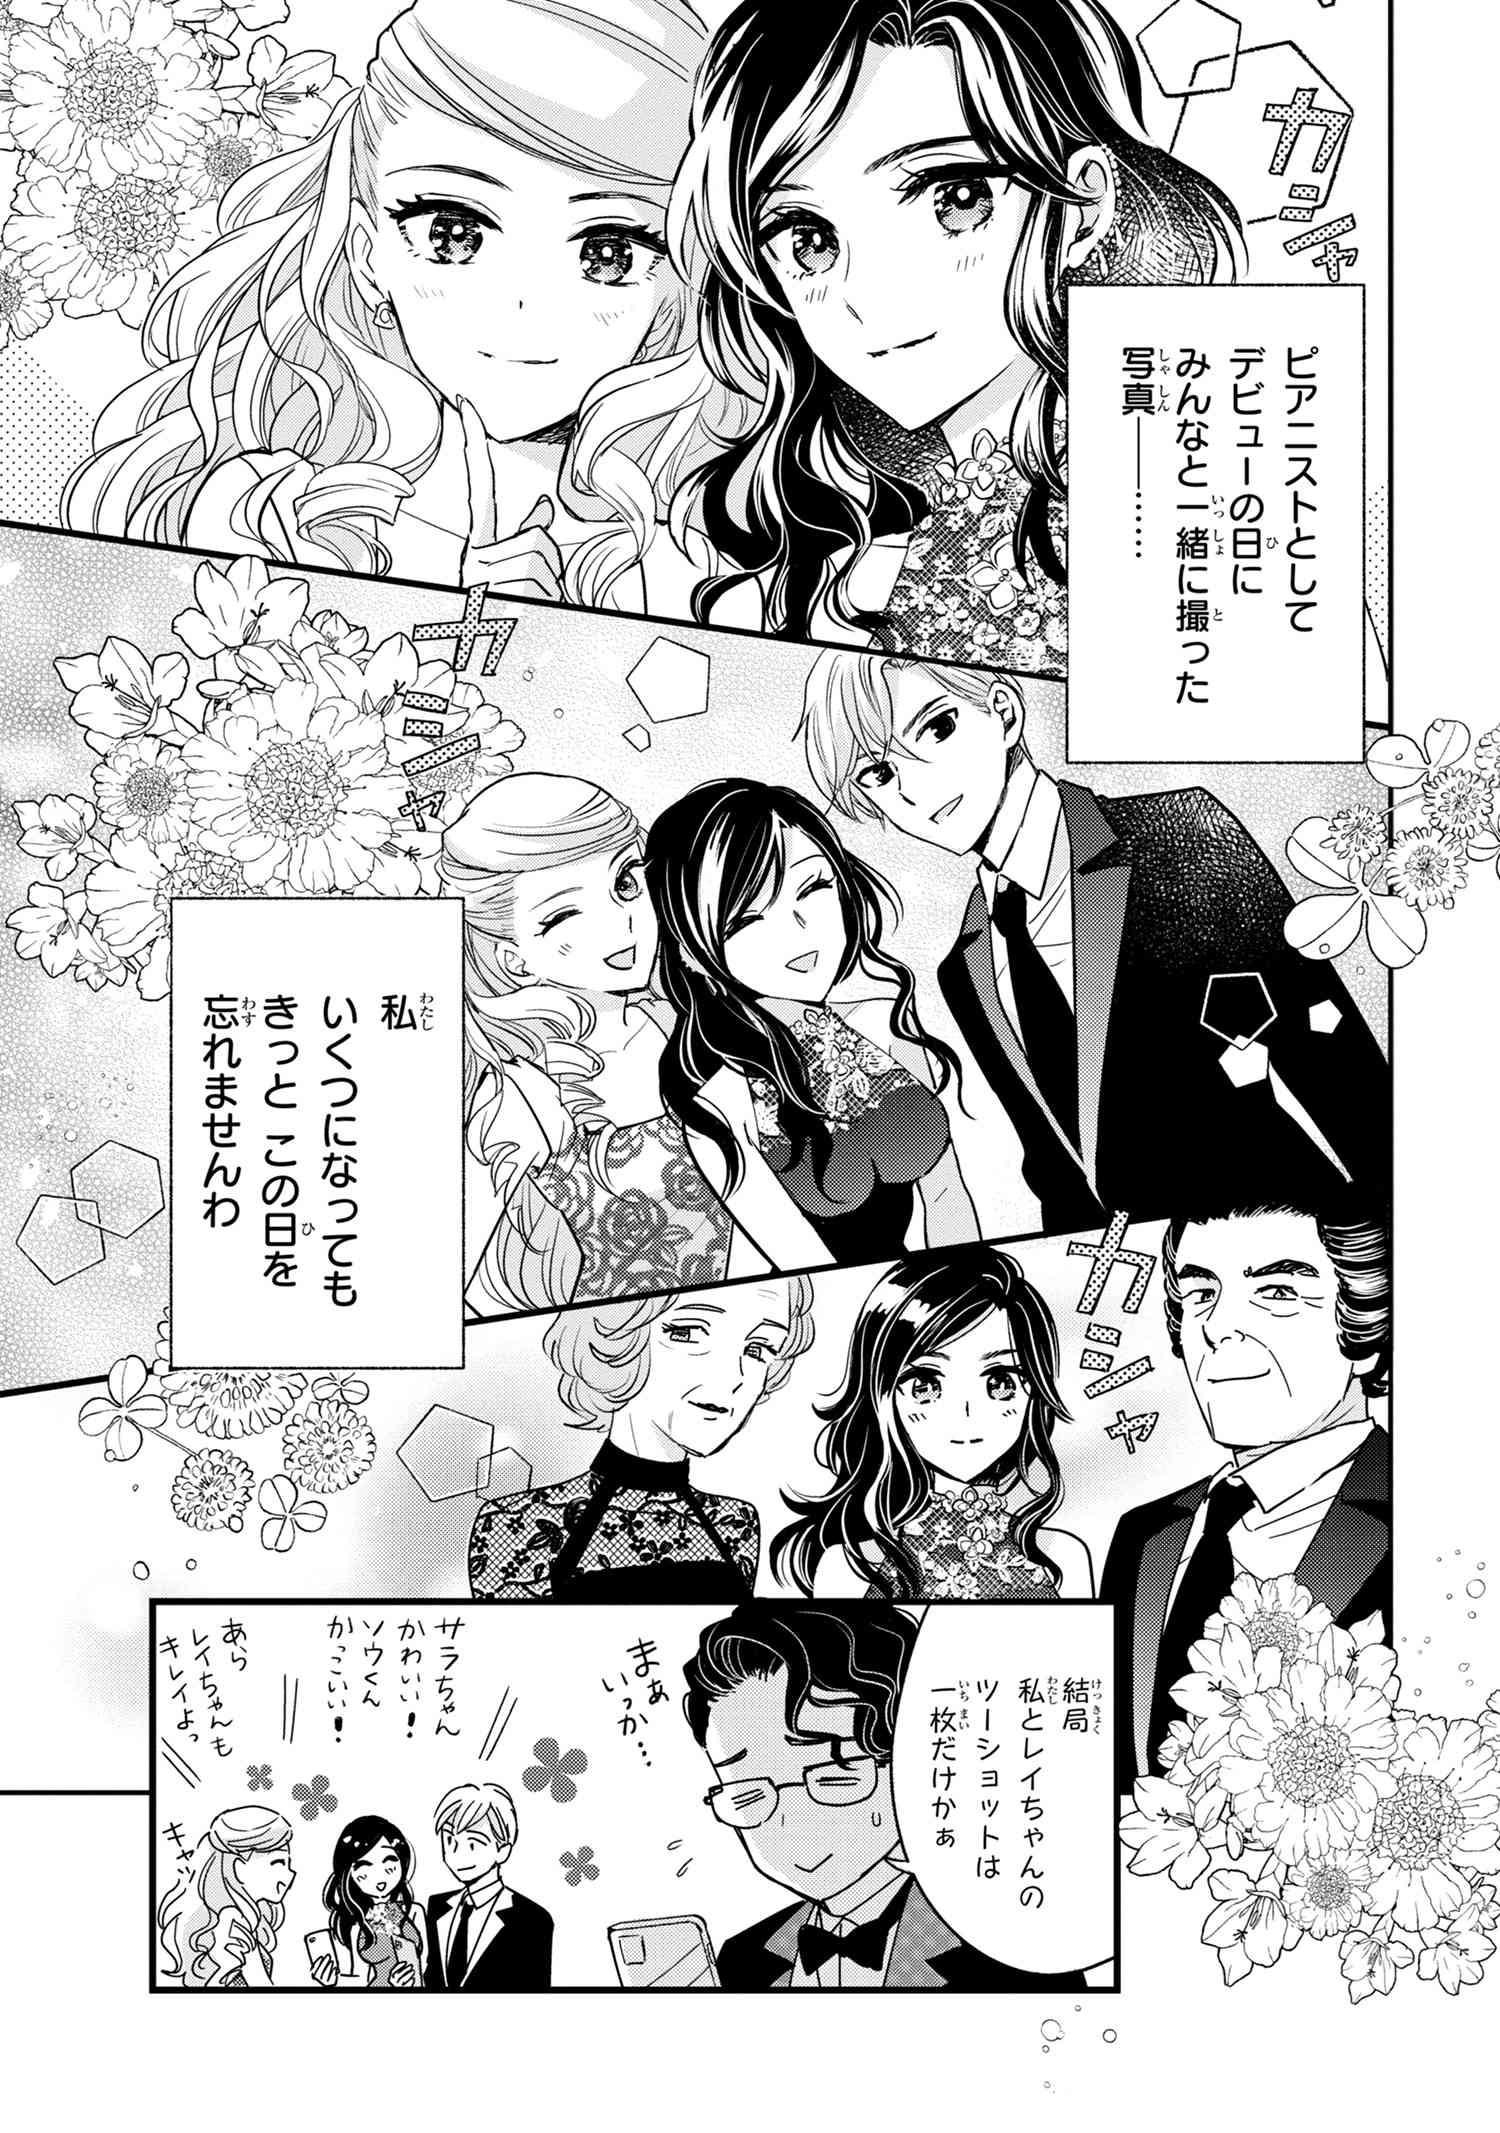 Reiko no Fuugi Akuyaku Reijou to Yobarete imasu ga, tada no Binbou Musume desu - Chapter 14-4 - Page 7